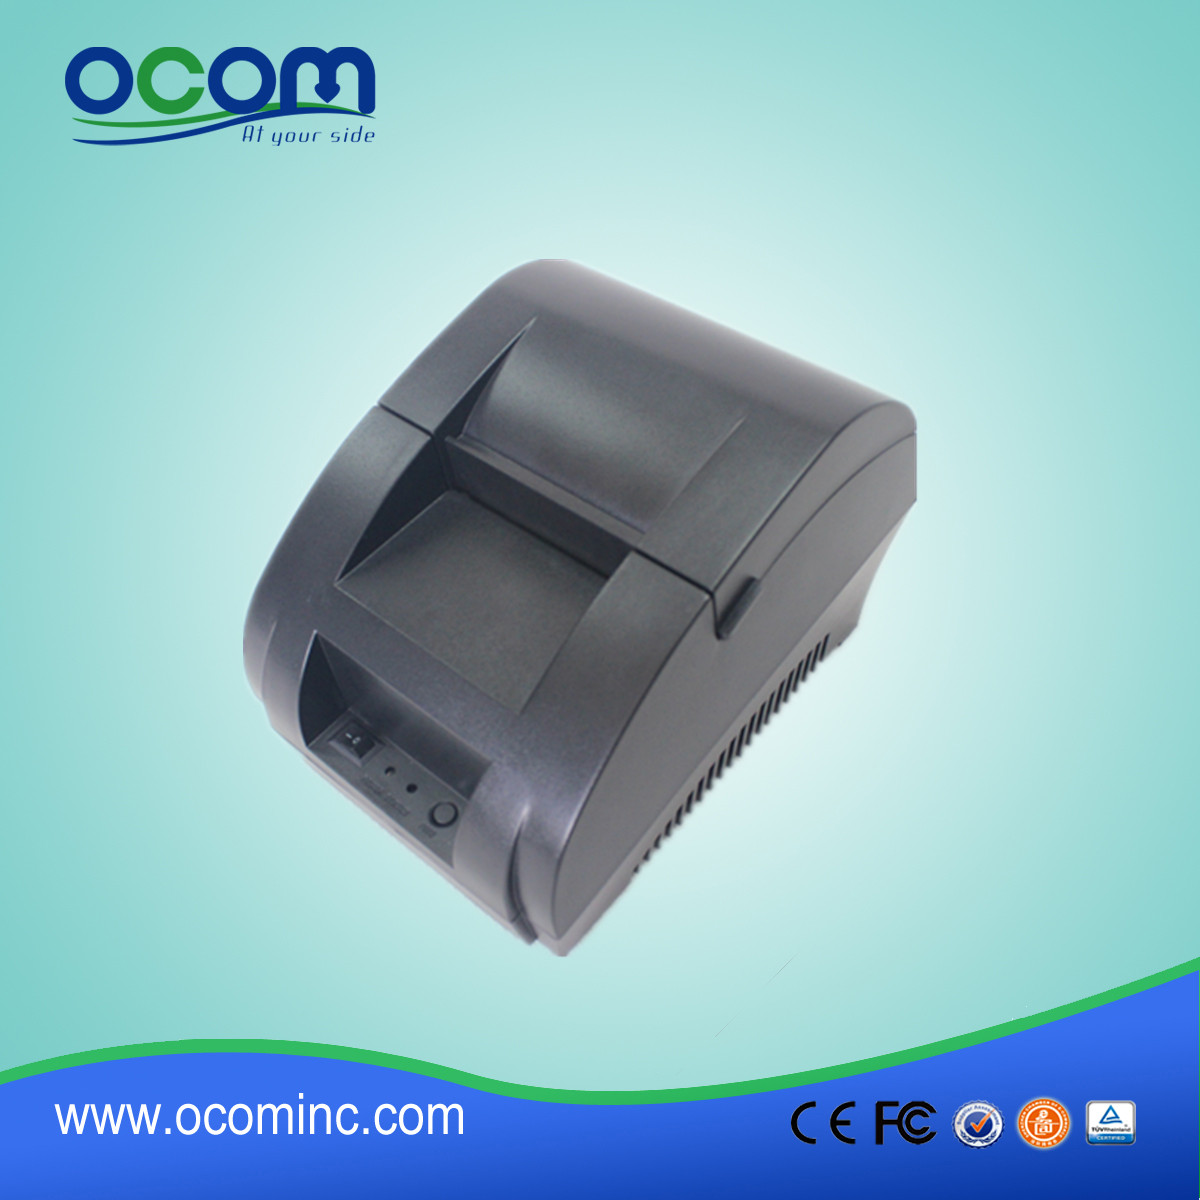 Stampante per ricevute termica da 58 mm con alimentatore integrato OCPP-58Z-U1 Stampa codice 1D / 2D